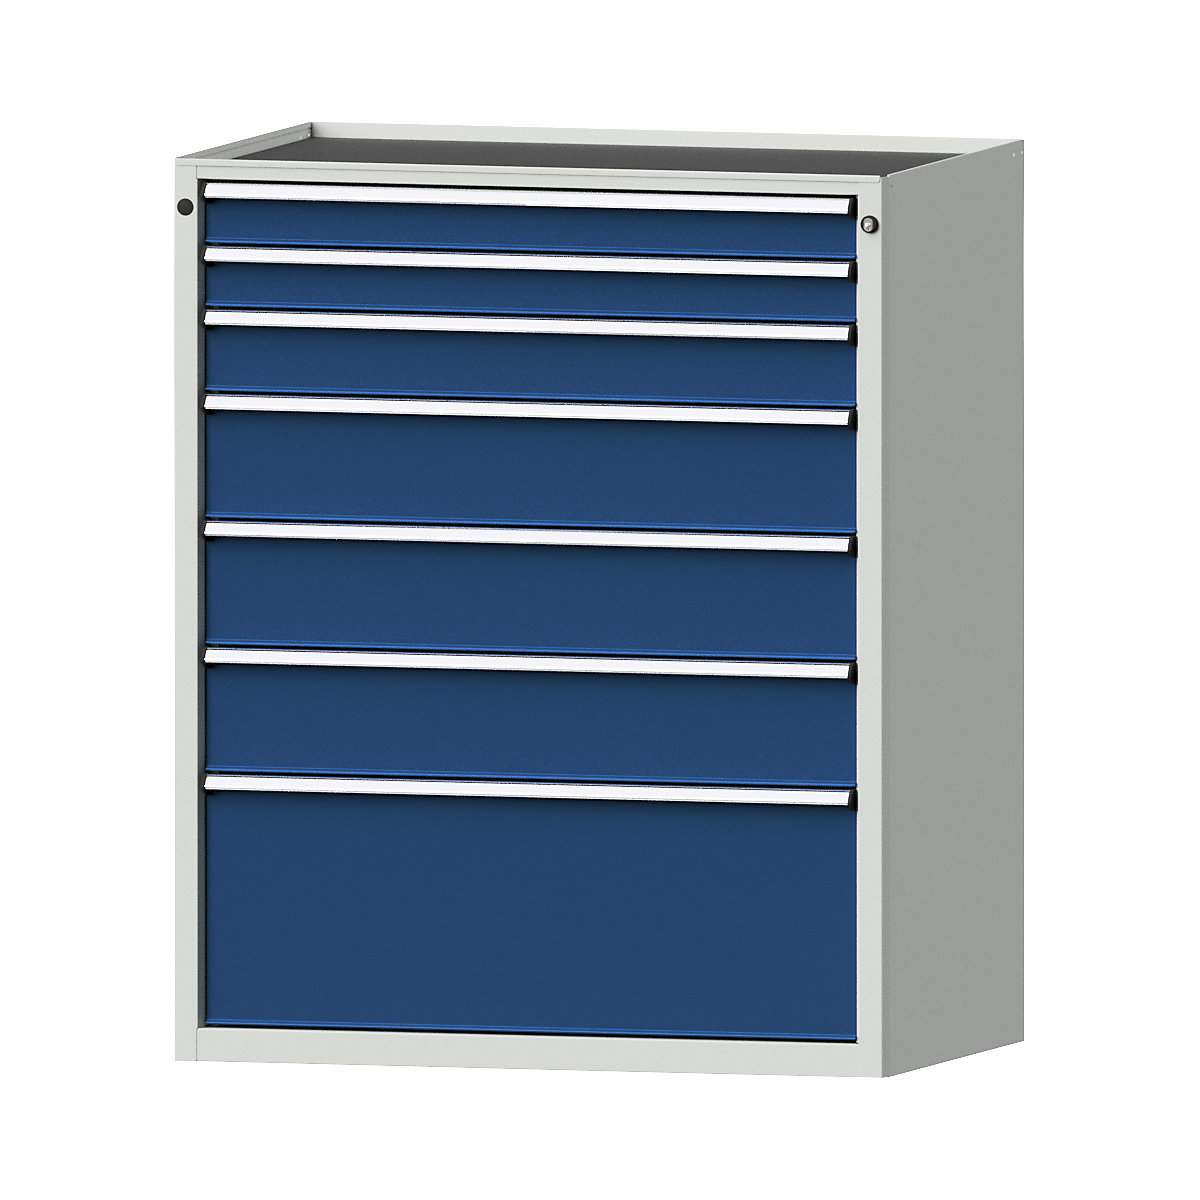 Szafa z szufladami – ANKE, szer. x głęb. 1060 x 675 mm, nośność szuflady 200 kg, 7 szuflad, wys. 1280 mm, front niebieski gencjanowy-5